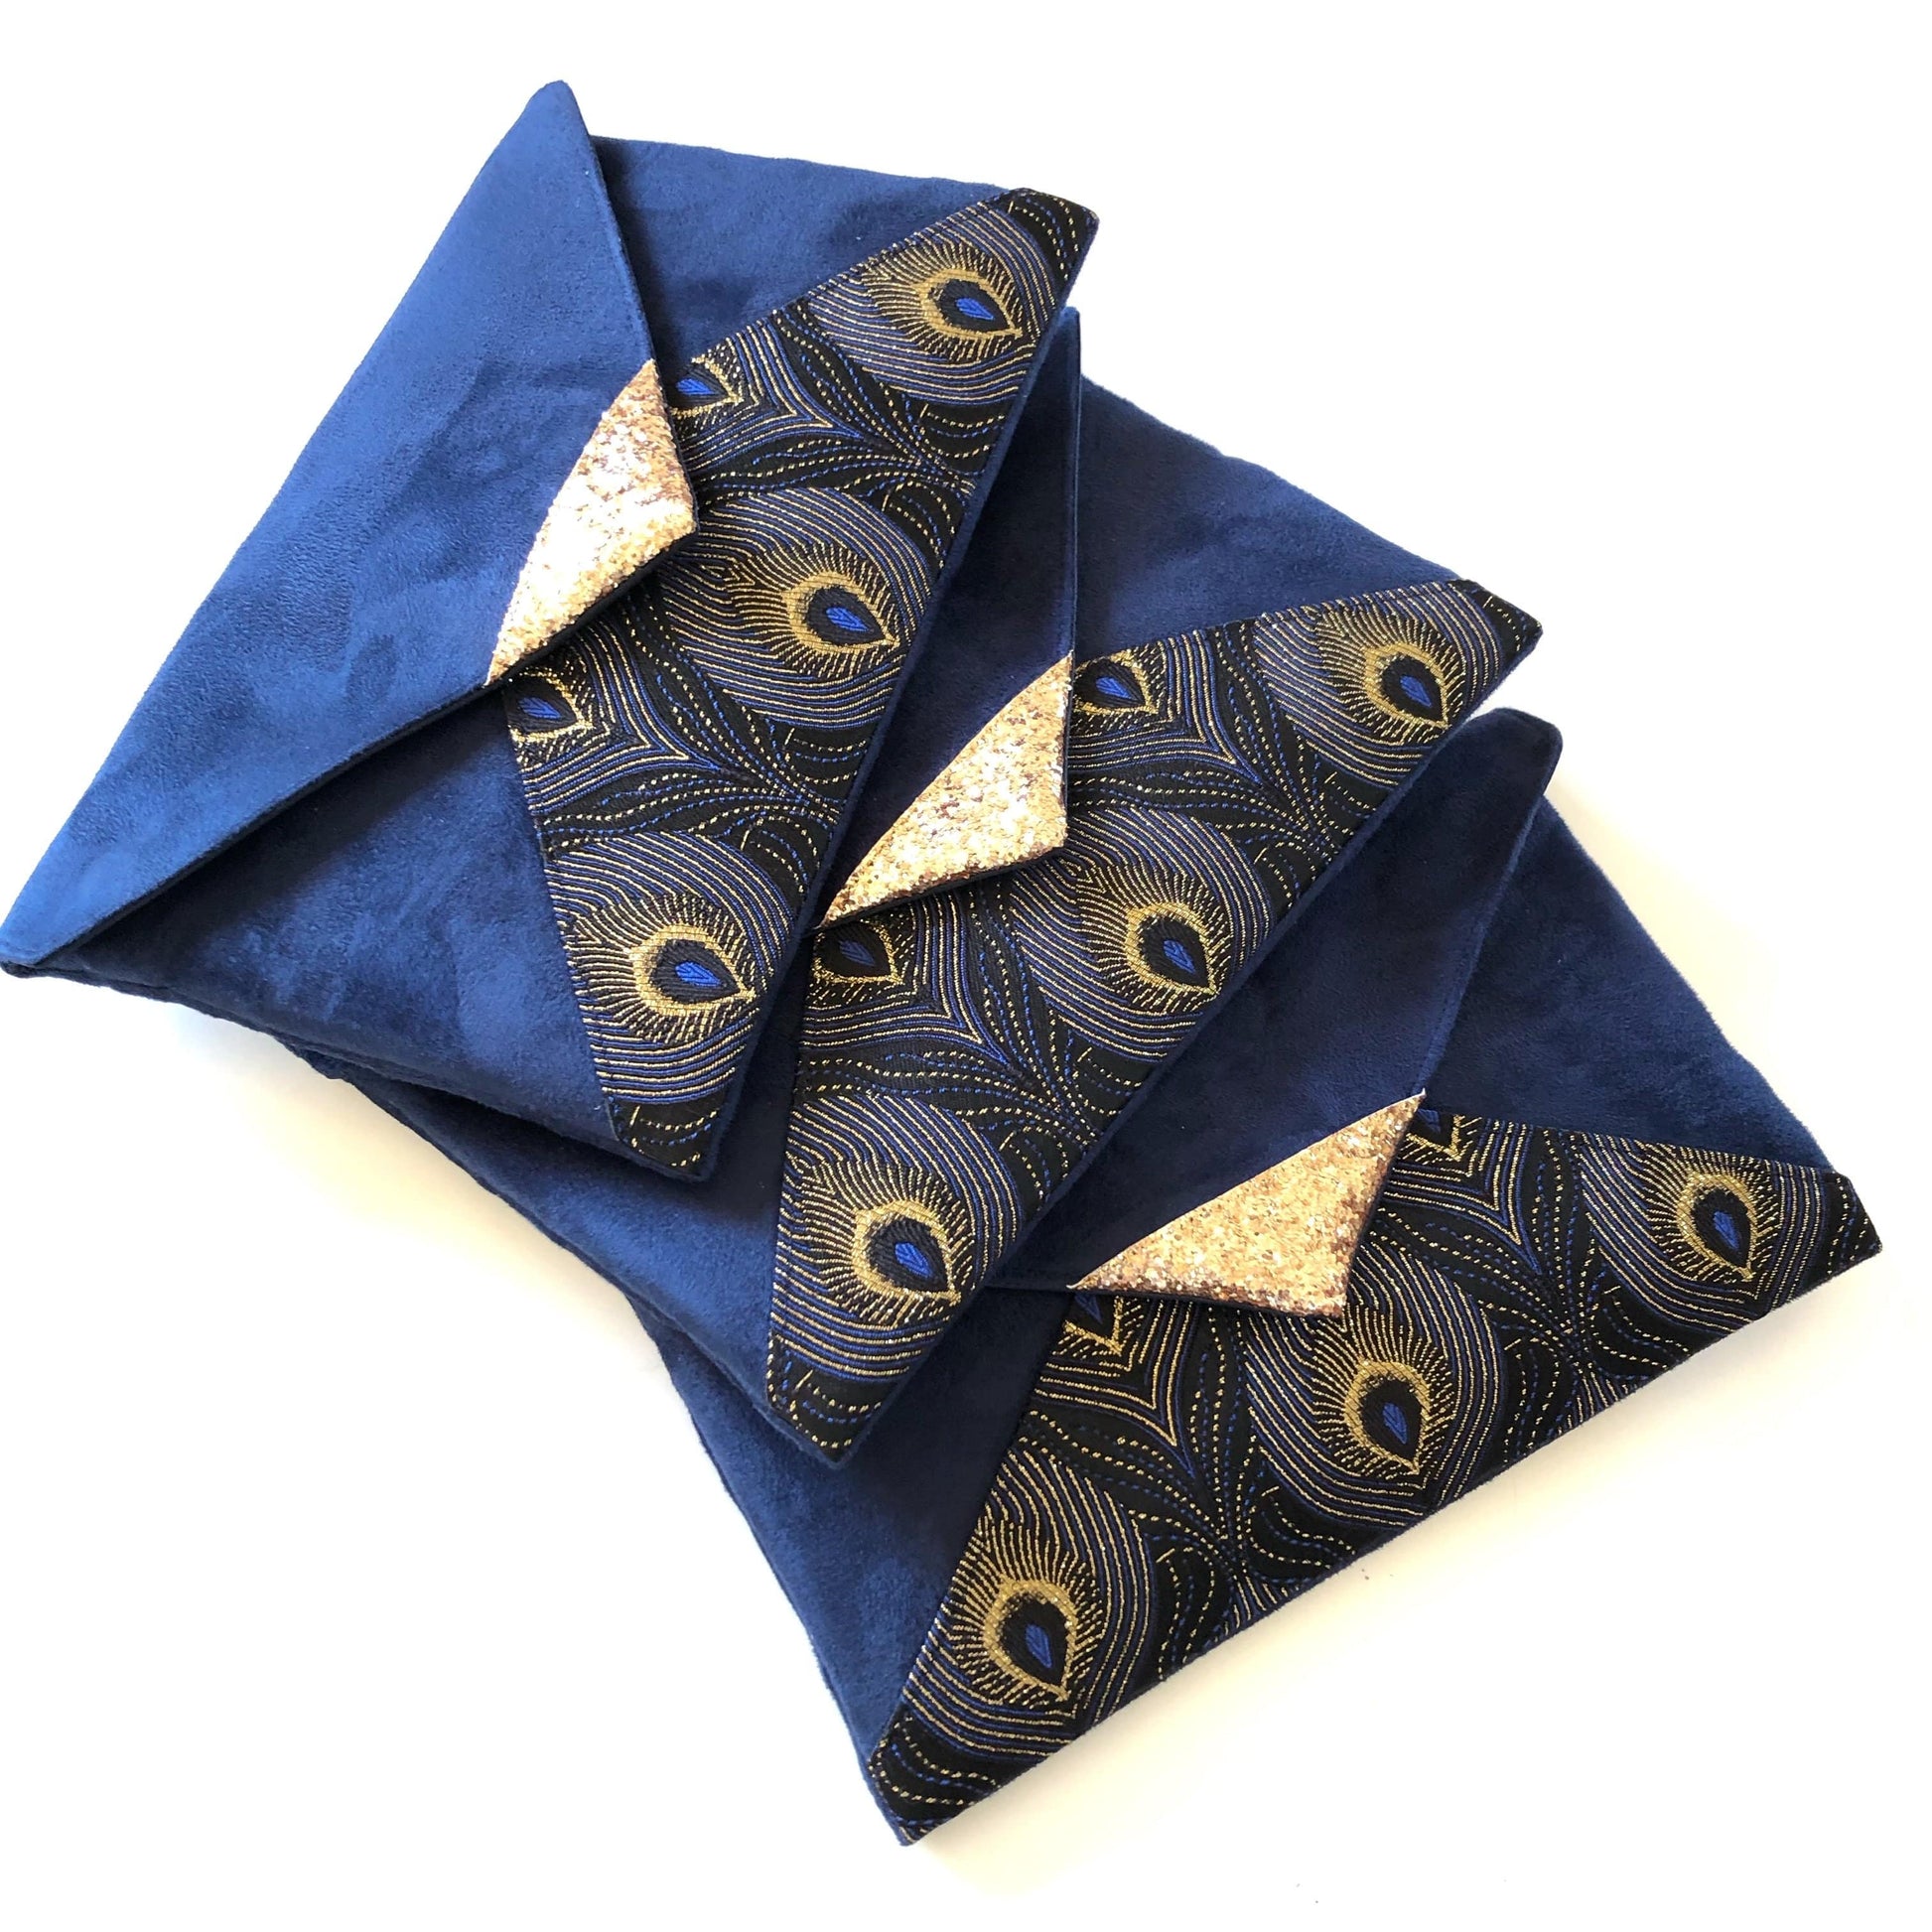 Fil des toiles Pochette Sac pochette bleu marine et jacquard bleu nuit queue de paon avec chaîne dorée